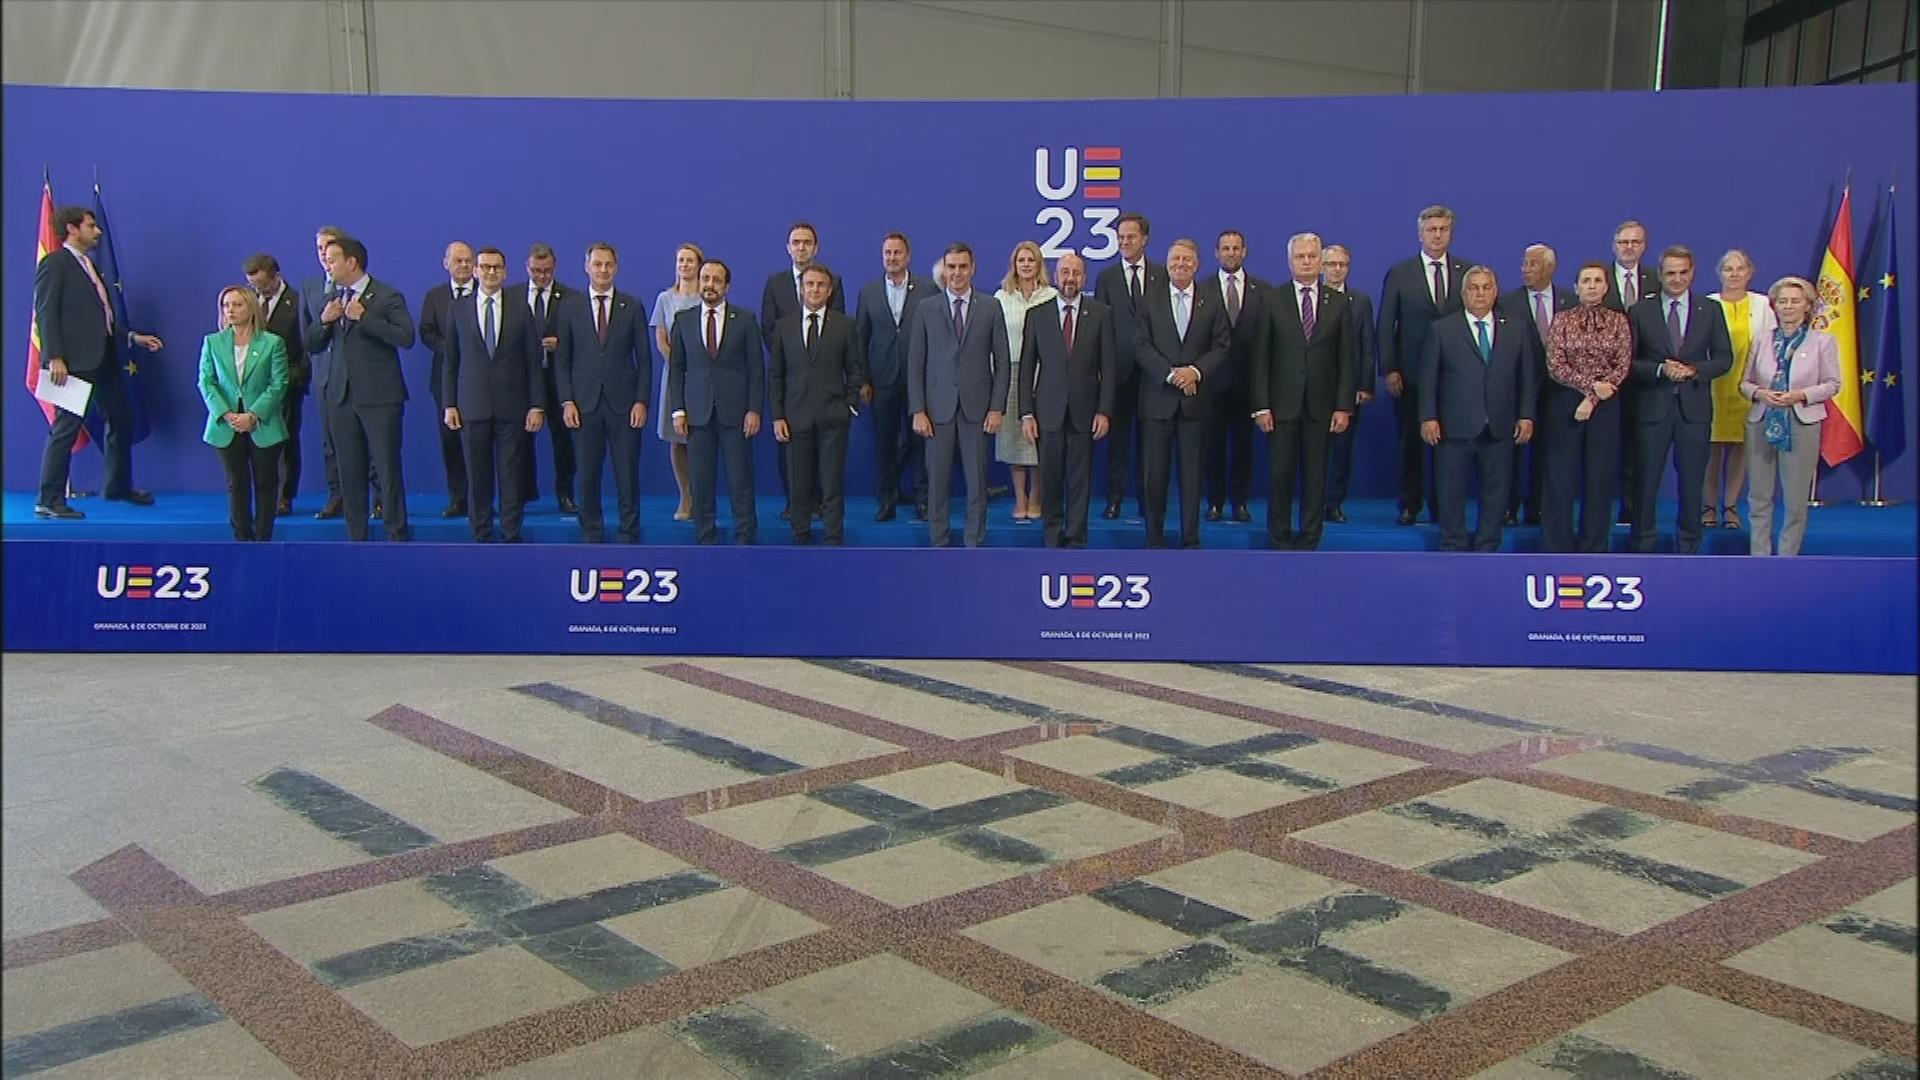 Staats-und Regierungschefs stehen für ein Gruppenbild vor einer blauen Wand